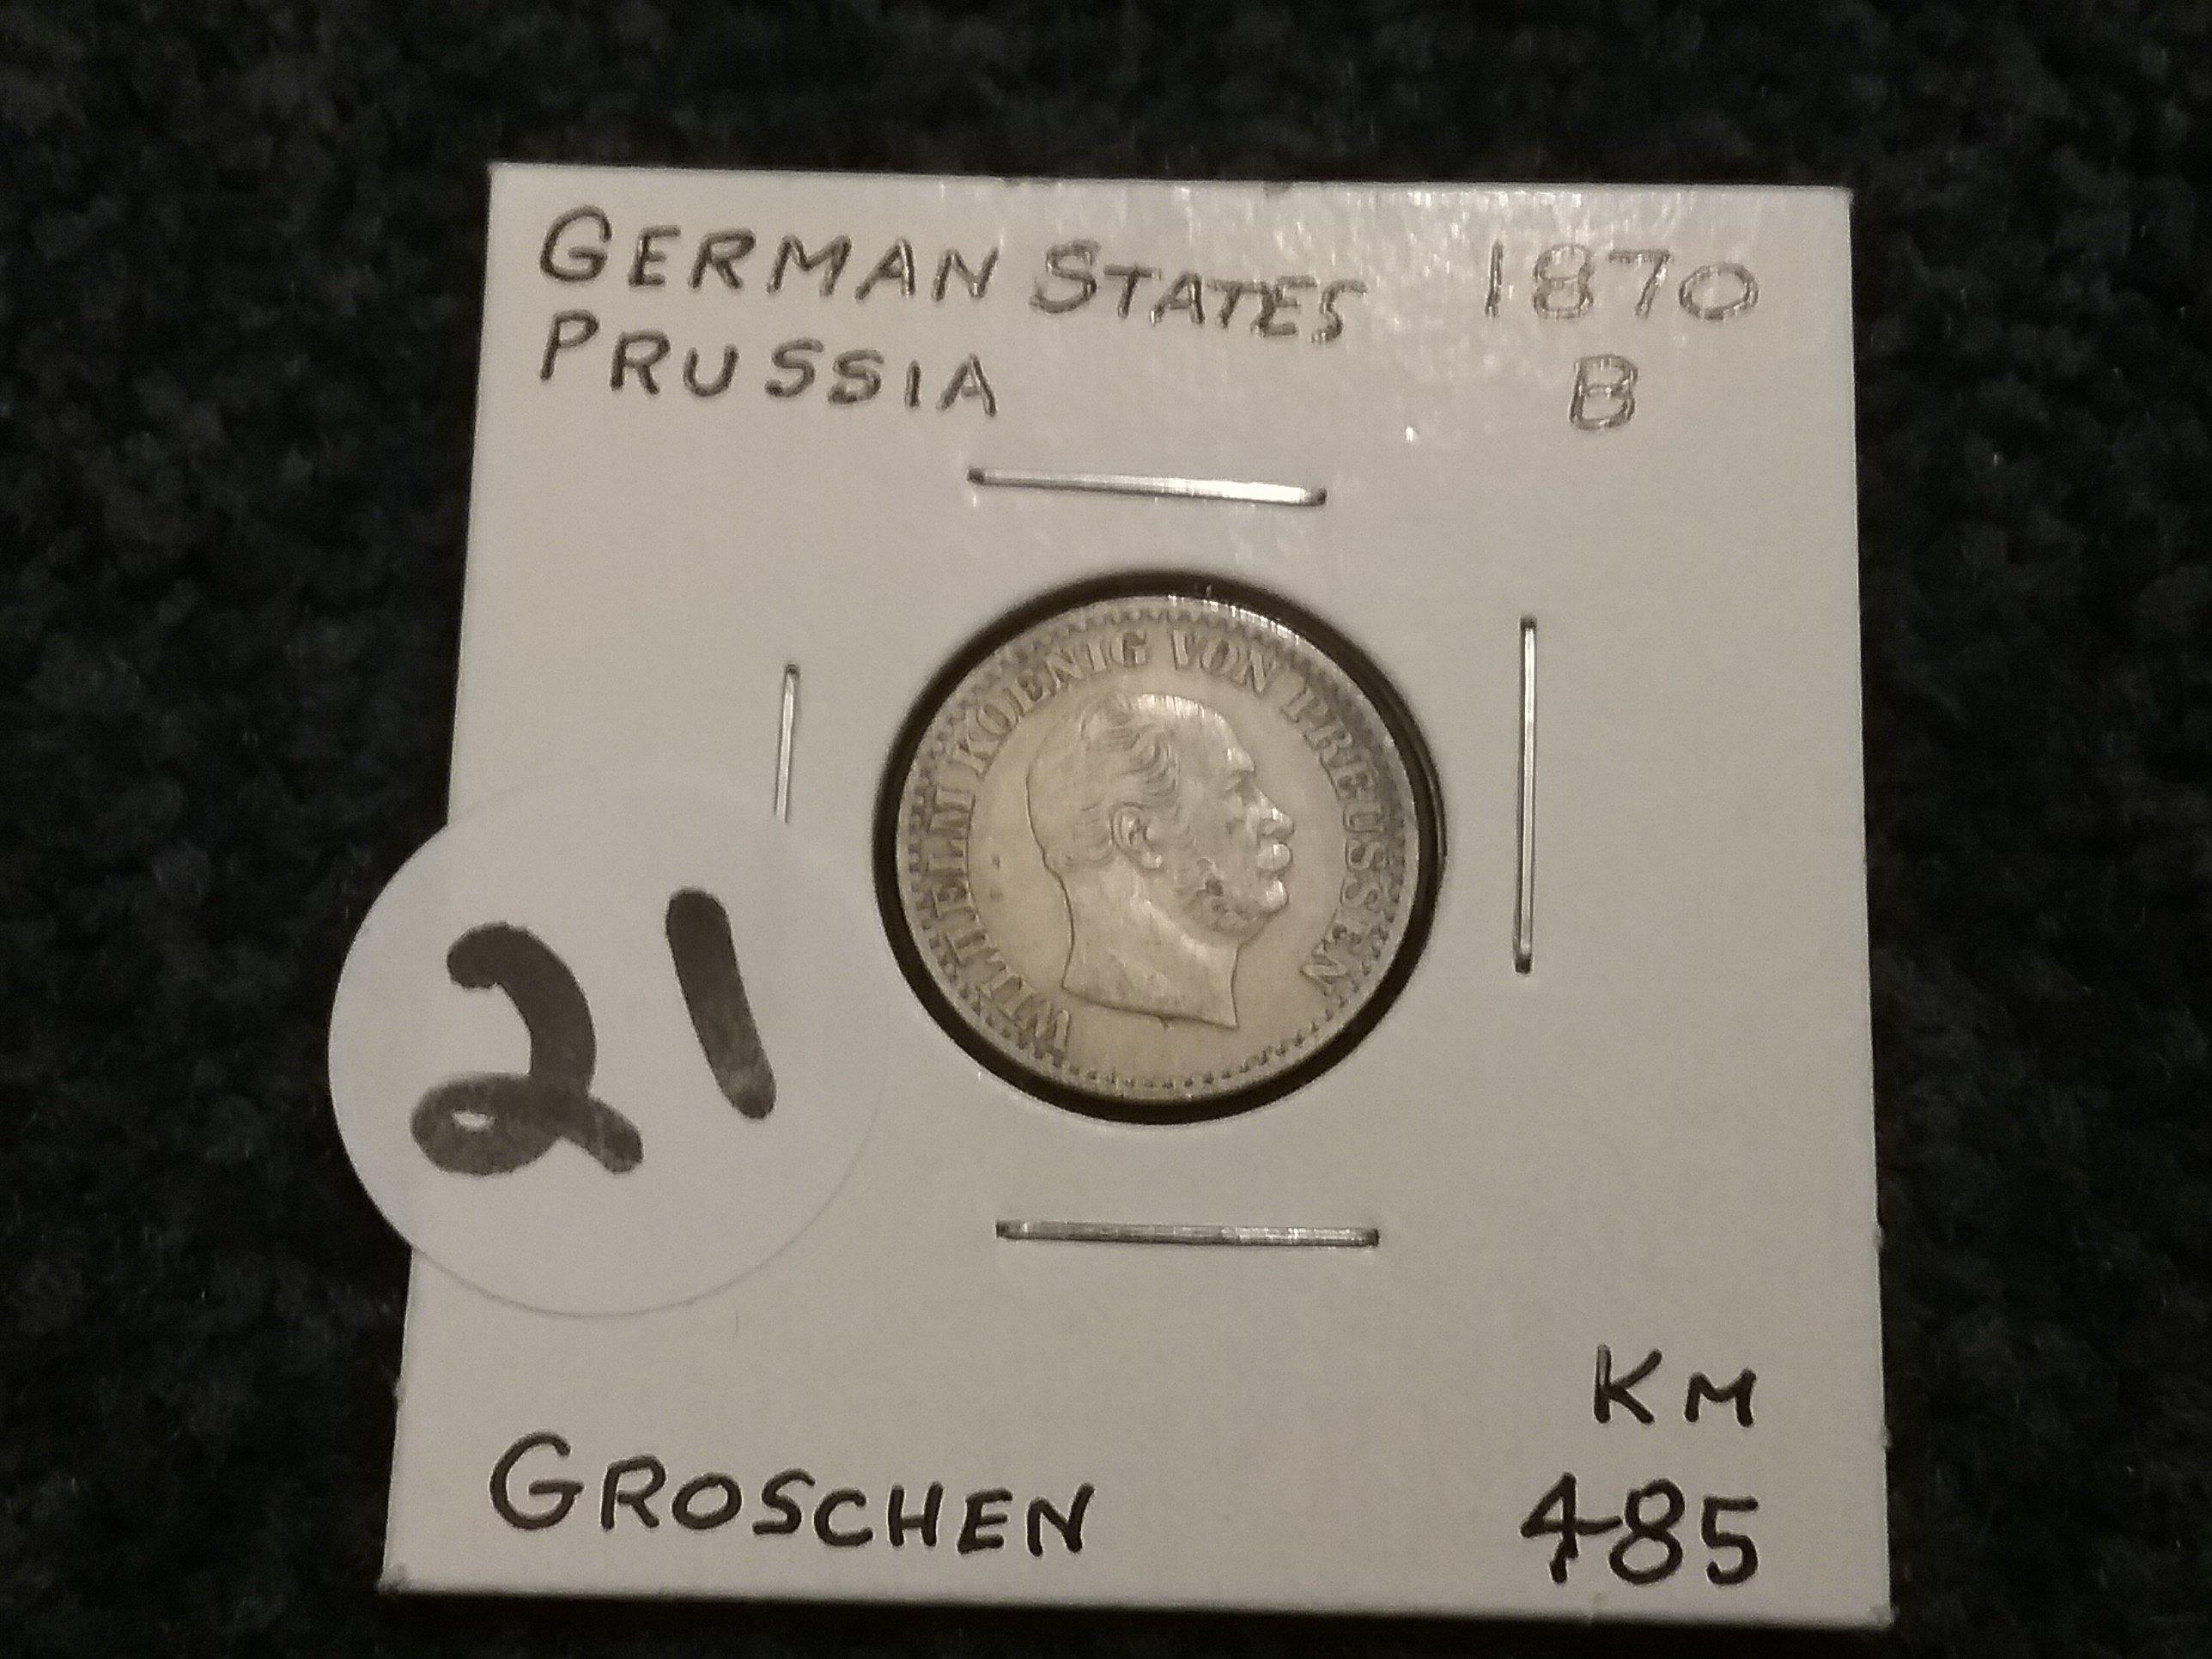 German States Prussia 1870B groschen